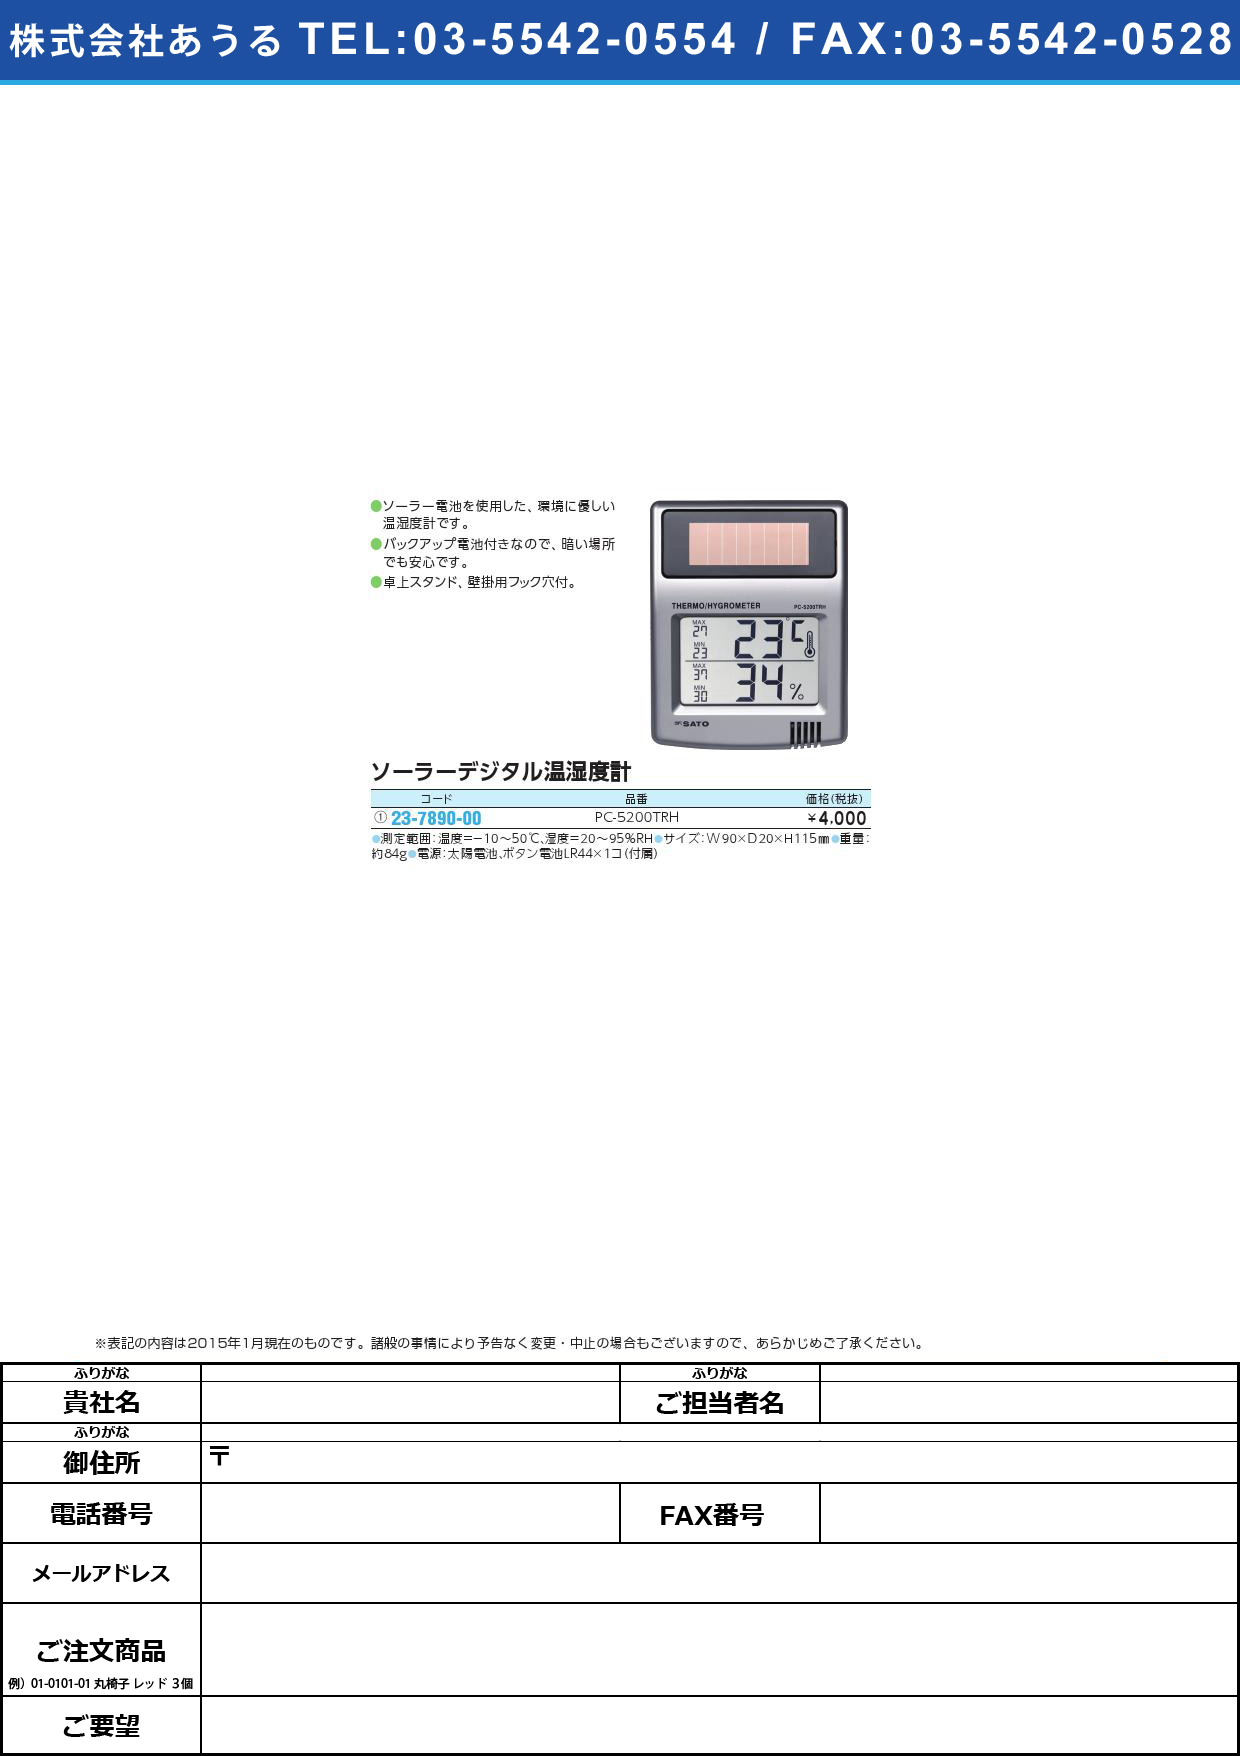 ソーラーデジタル温湿度計 ｿｰﾗｰﾃﾞｼﾞﾀﾙｵﾝｼﾂﾄﾞｹｲ(23-7890-00)PC-5200TRH【1台単位】